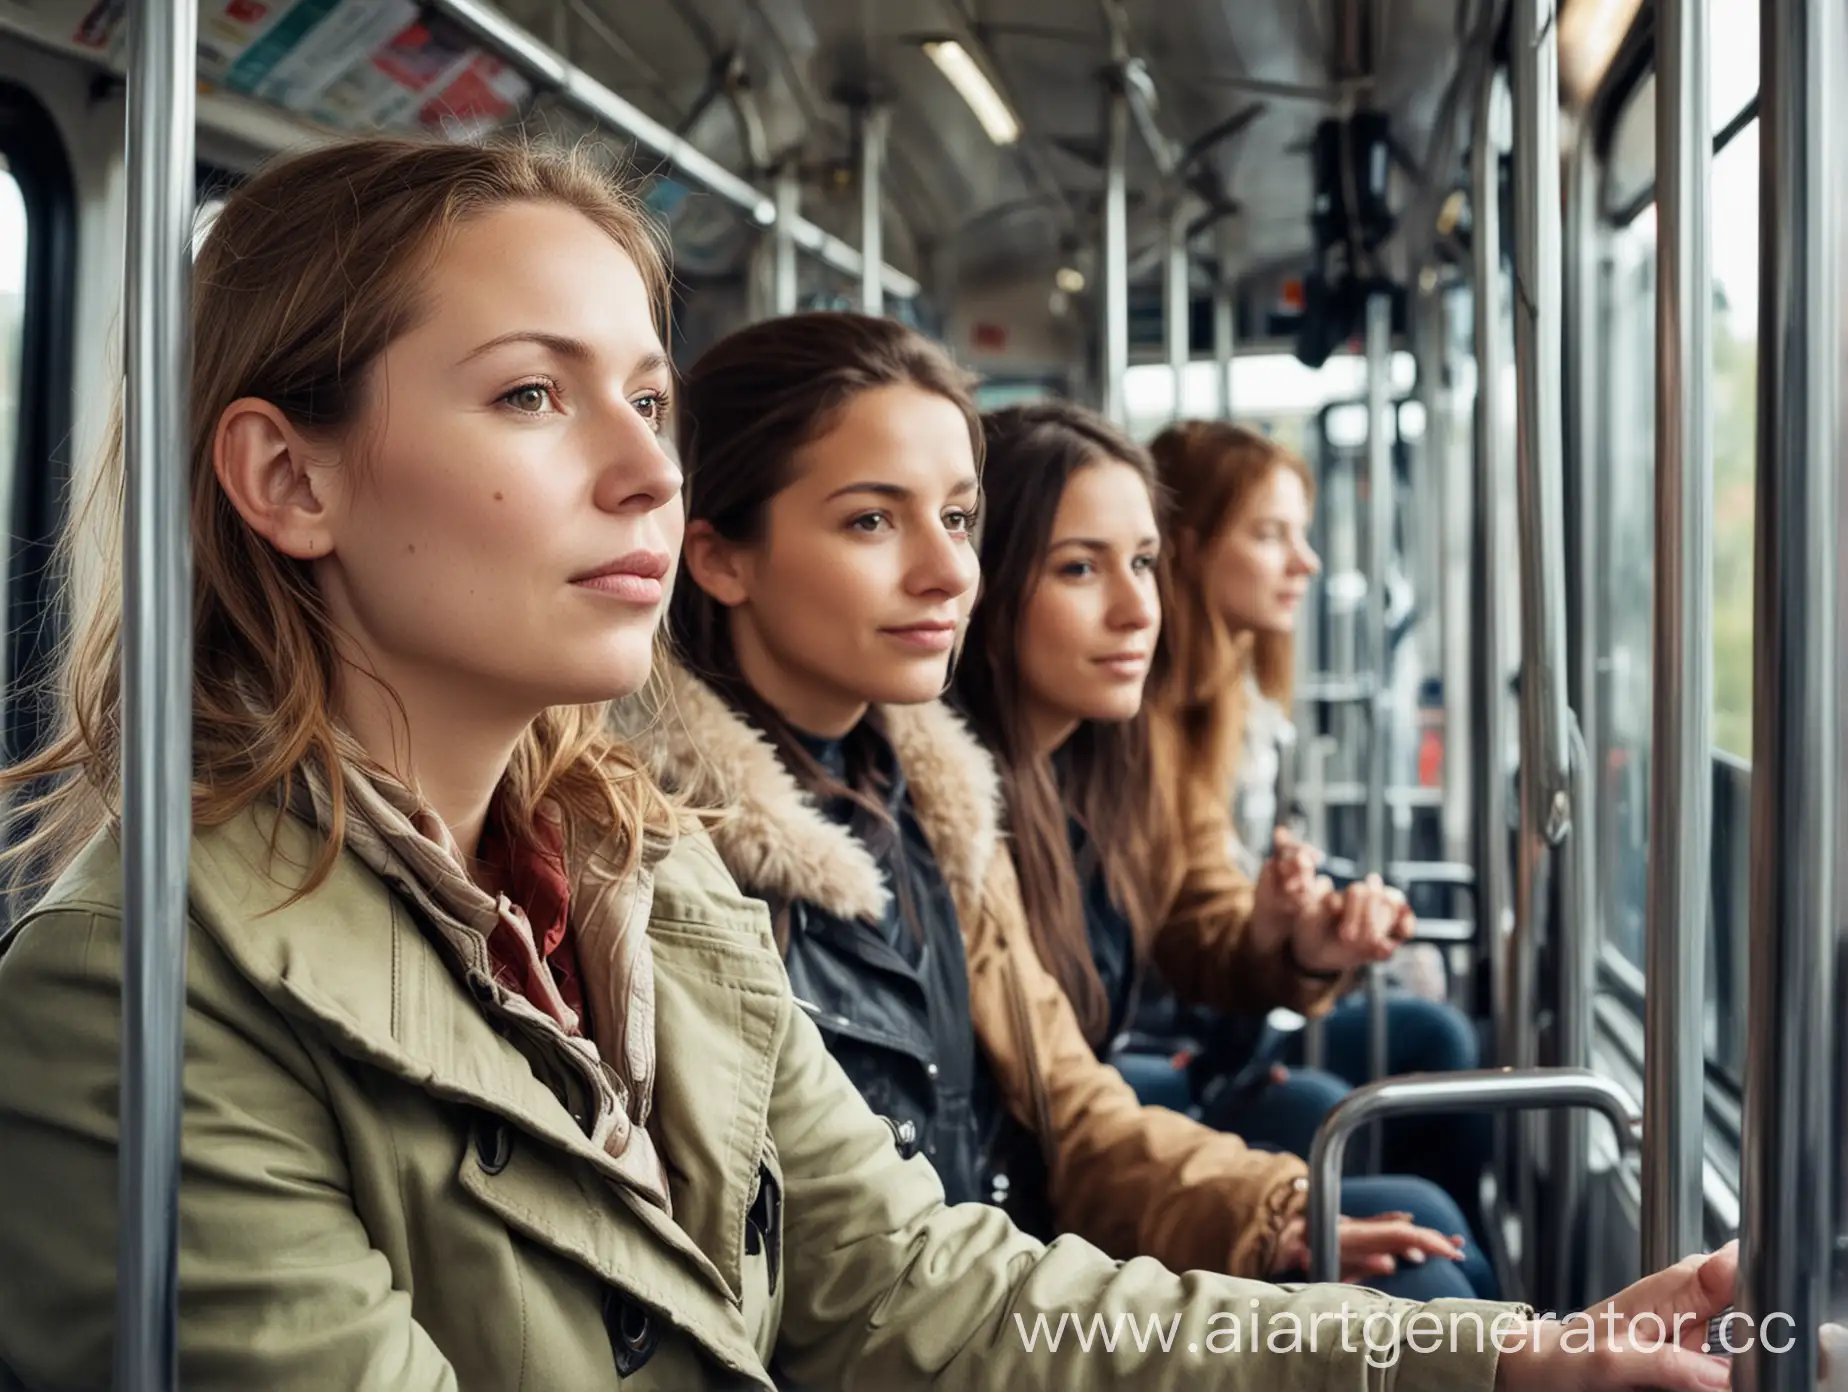 Urban-Commute-Adult-Women-on-Public-Transport